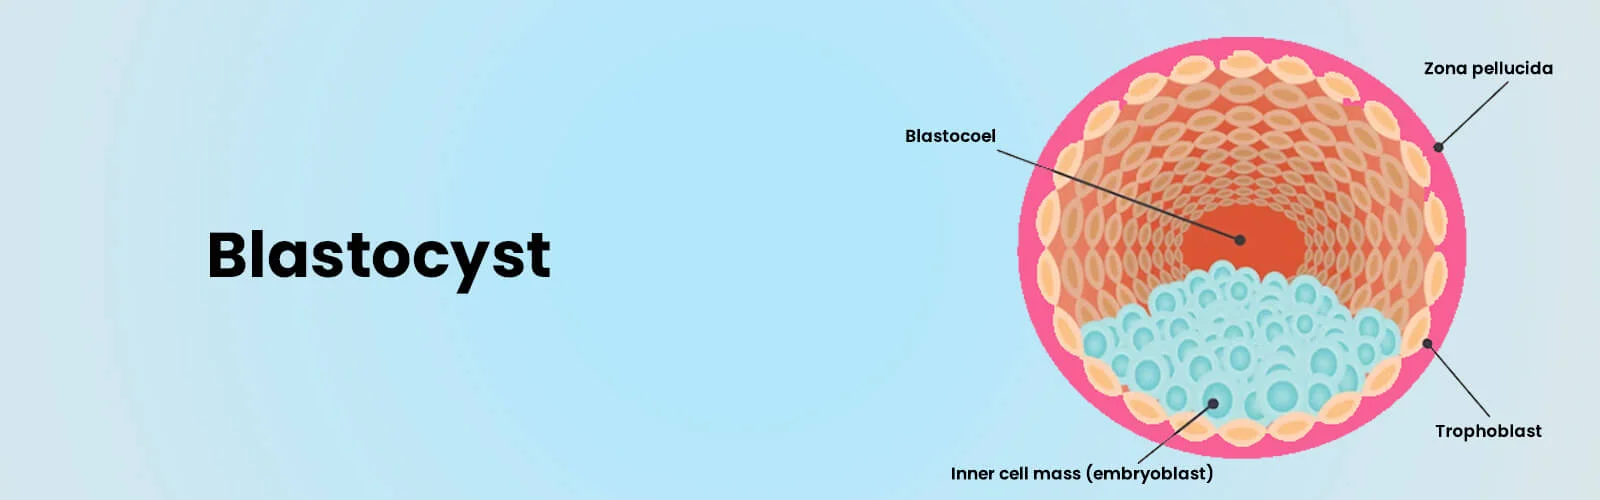 blastocyst-banner